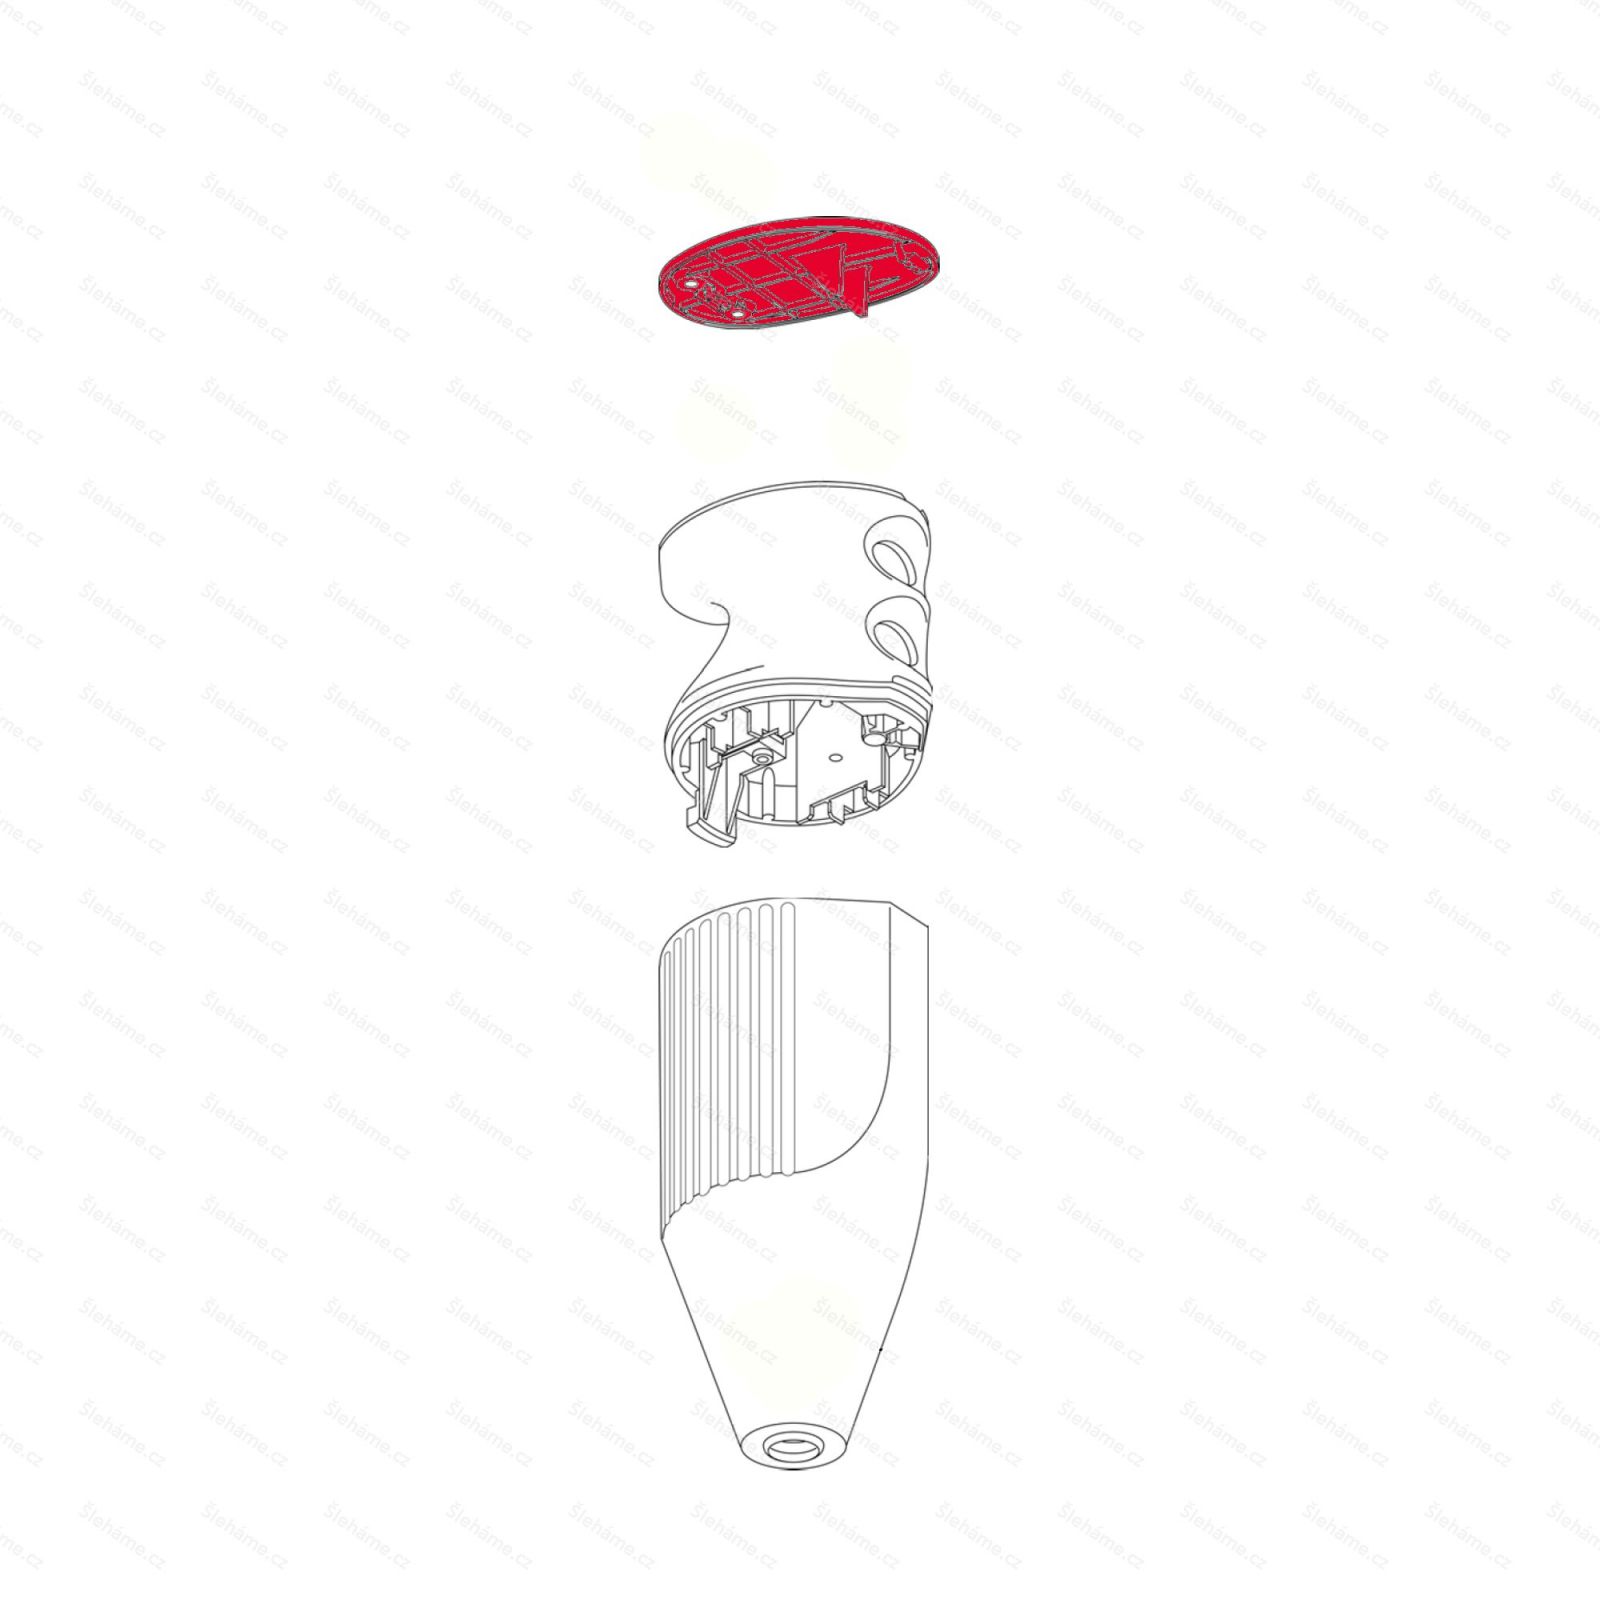 Víčko rukojeti mixéru Bamix model C, červená metalíza - ilustrace